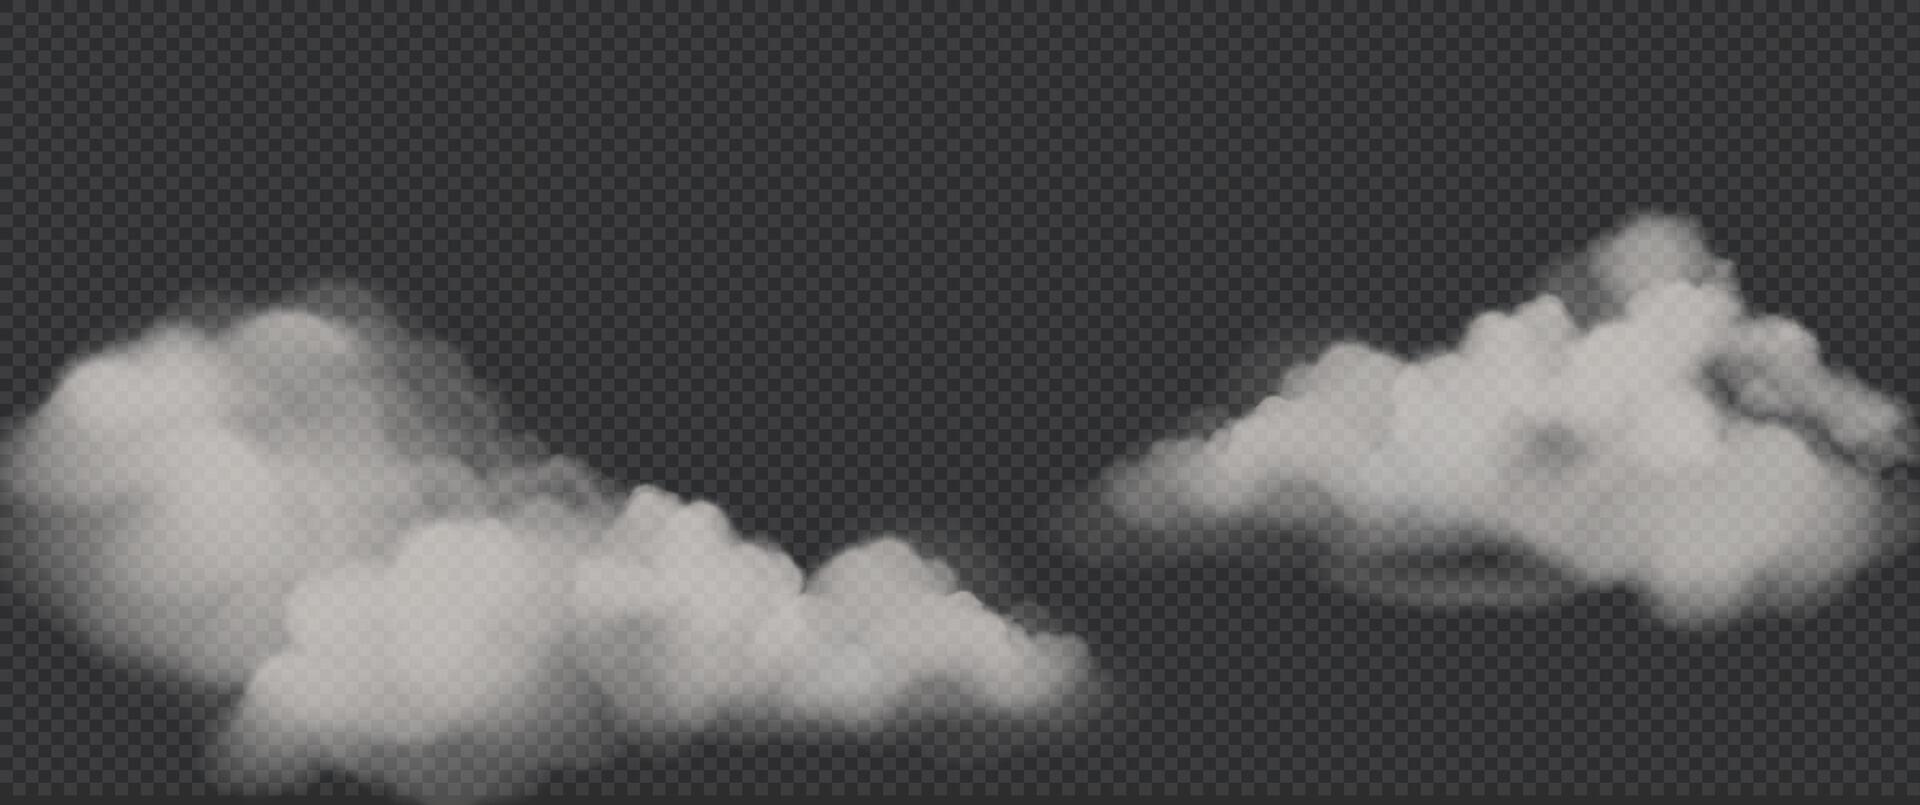 vit dimma eller rök på mörk kopia utrymme bakgrund. vektor illustration